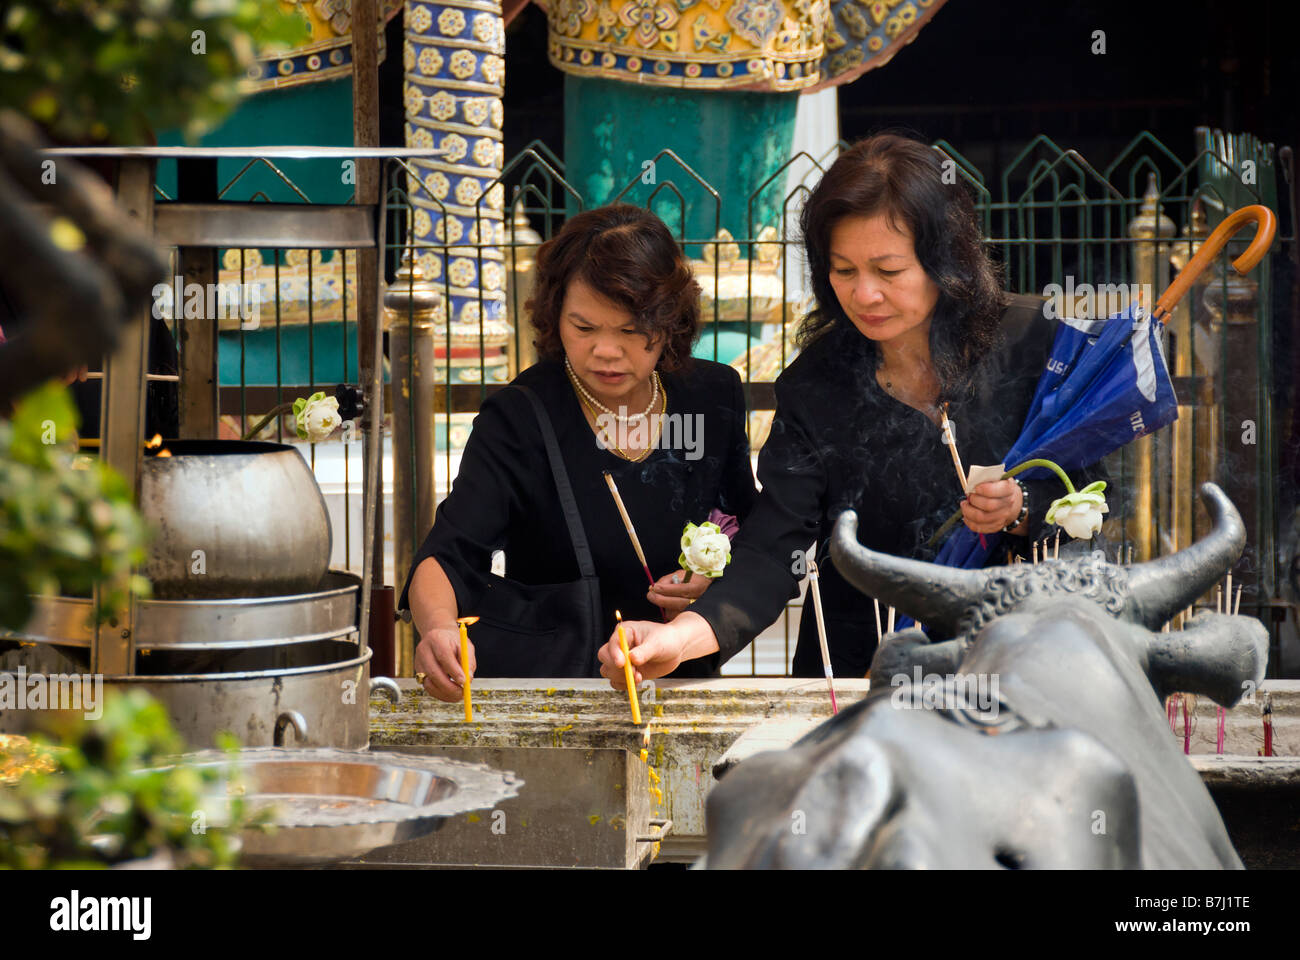 Les femmes thaïlandaises bougies d'éclairage - Wat Phra Kaew et le Grand Palais dans le centre de Bangkok en Thaïlande Banque D'Images